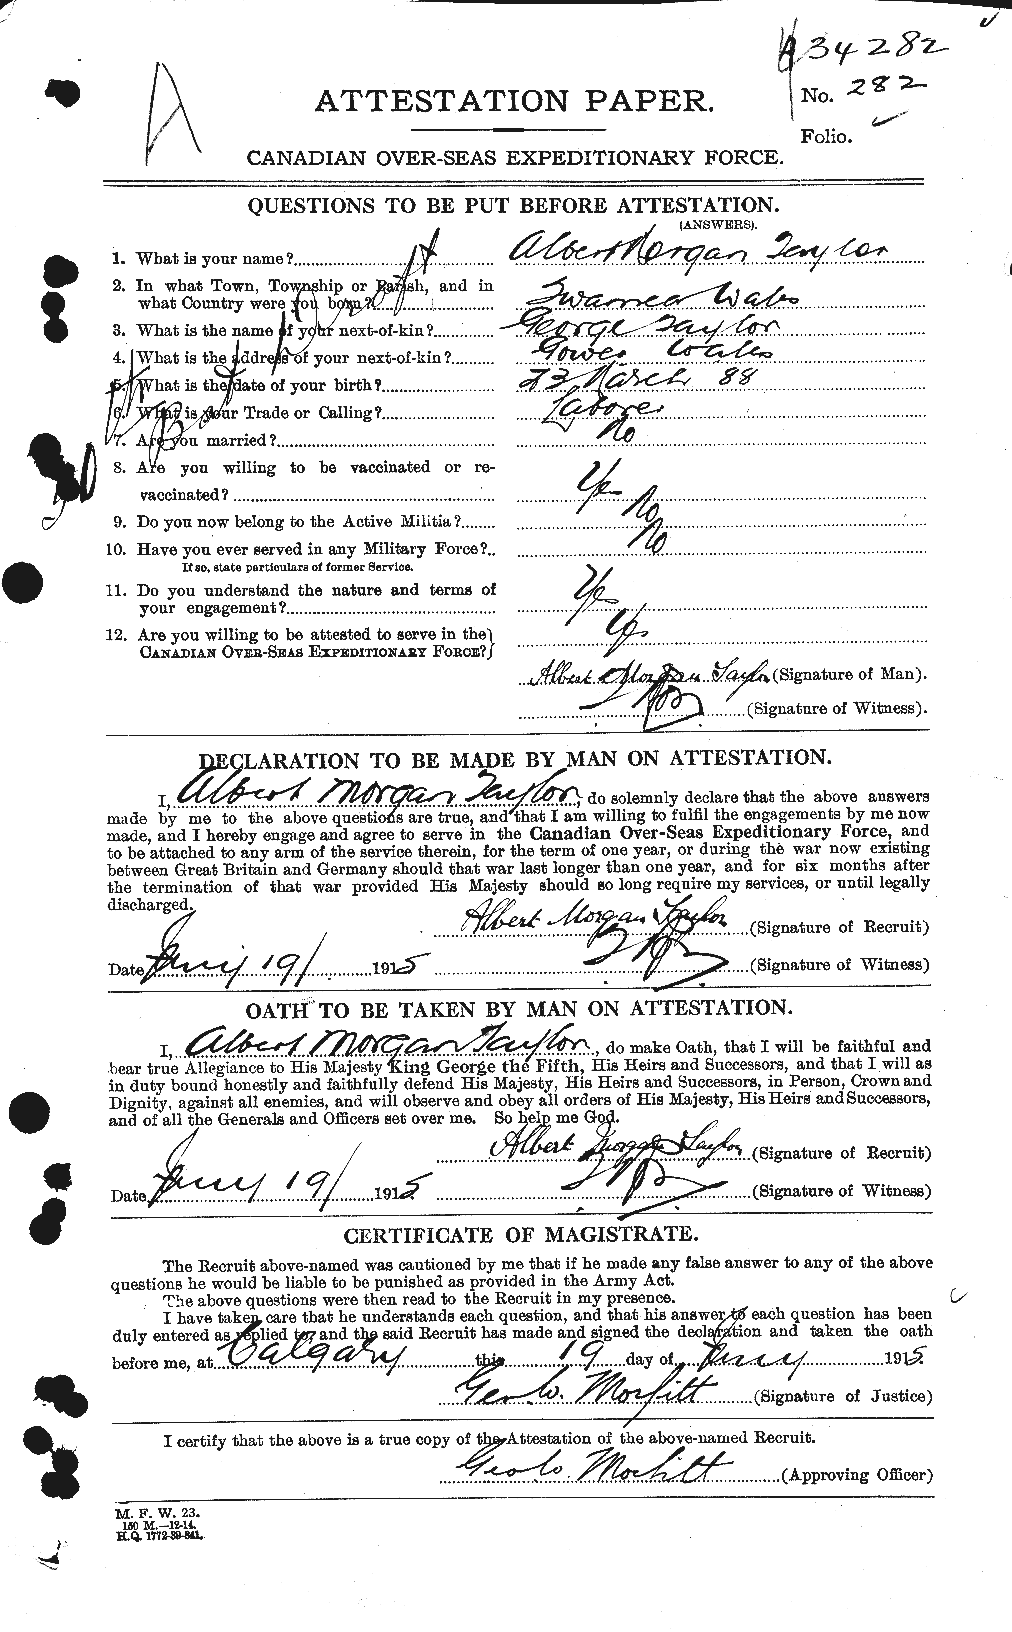 Dossiers du Personnel de la Première Guerre mondiale - CEC 626123a